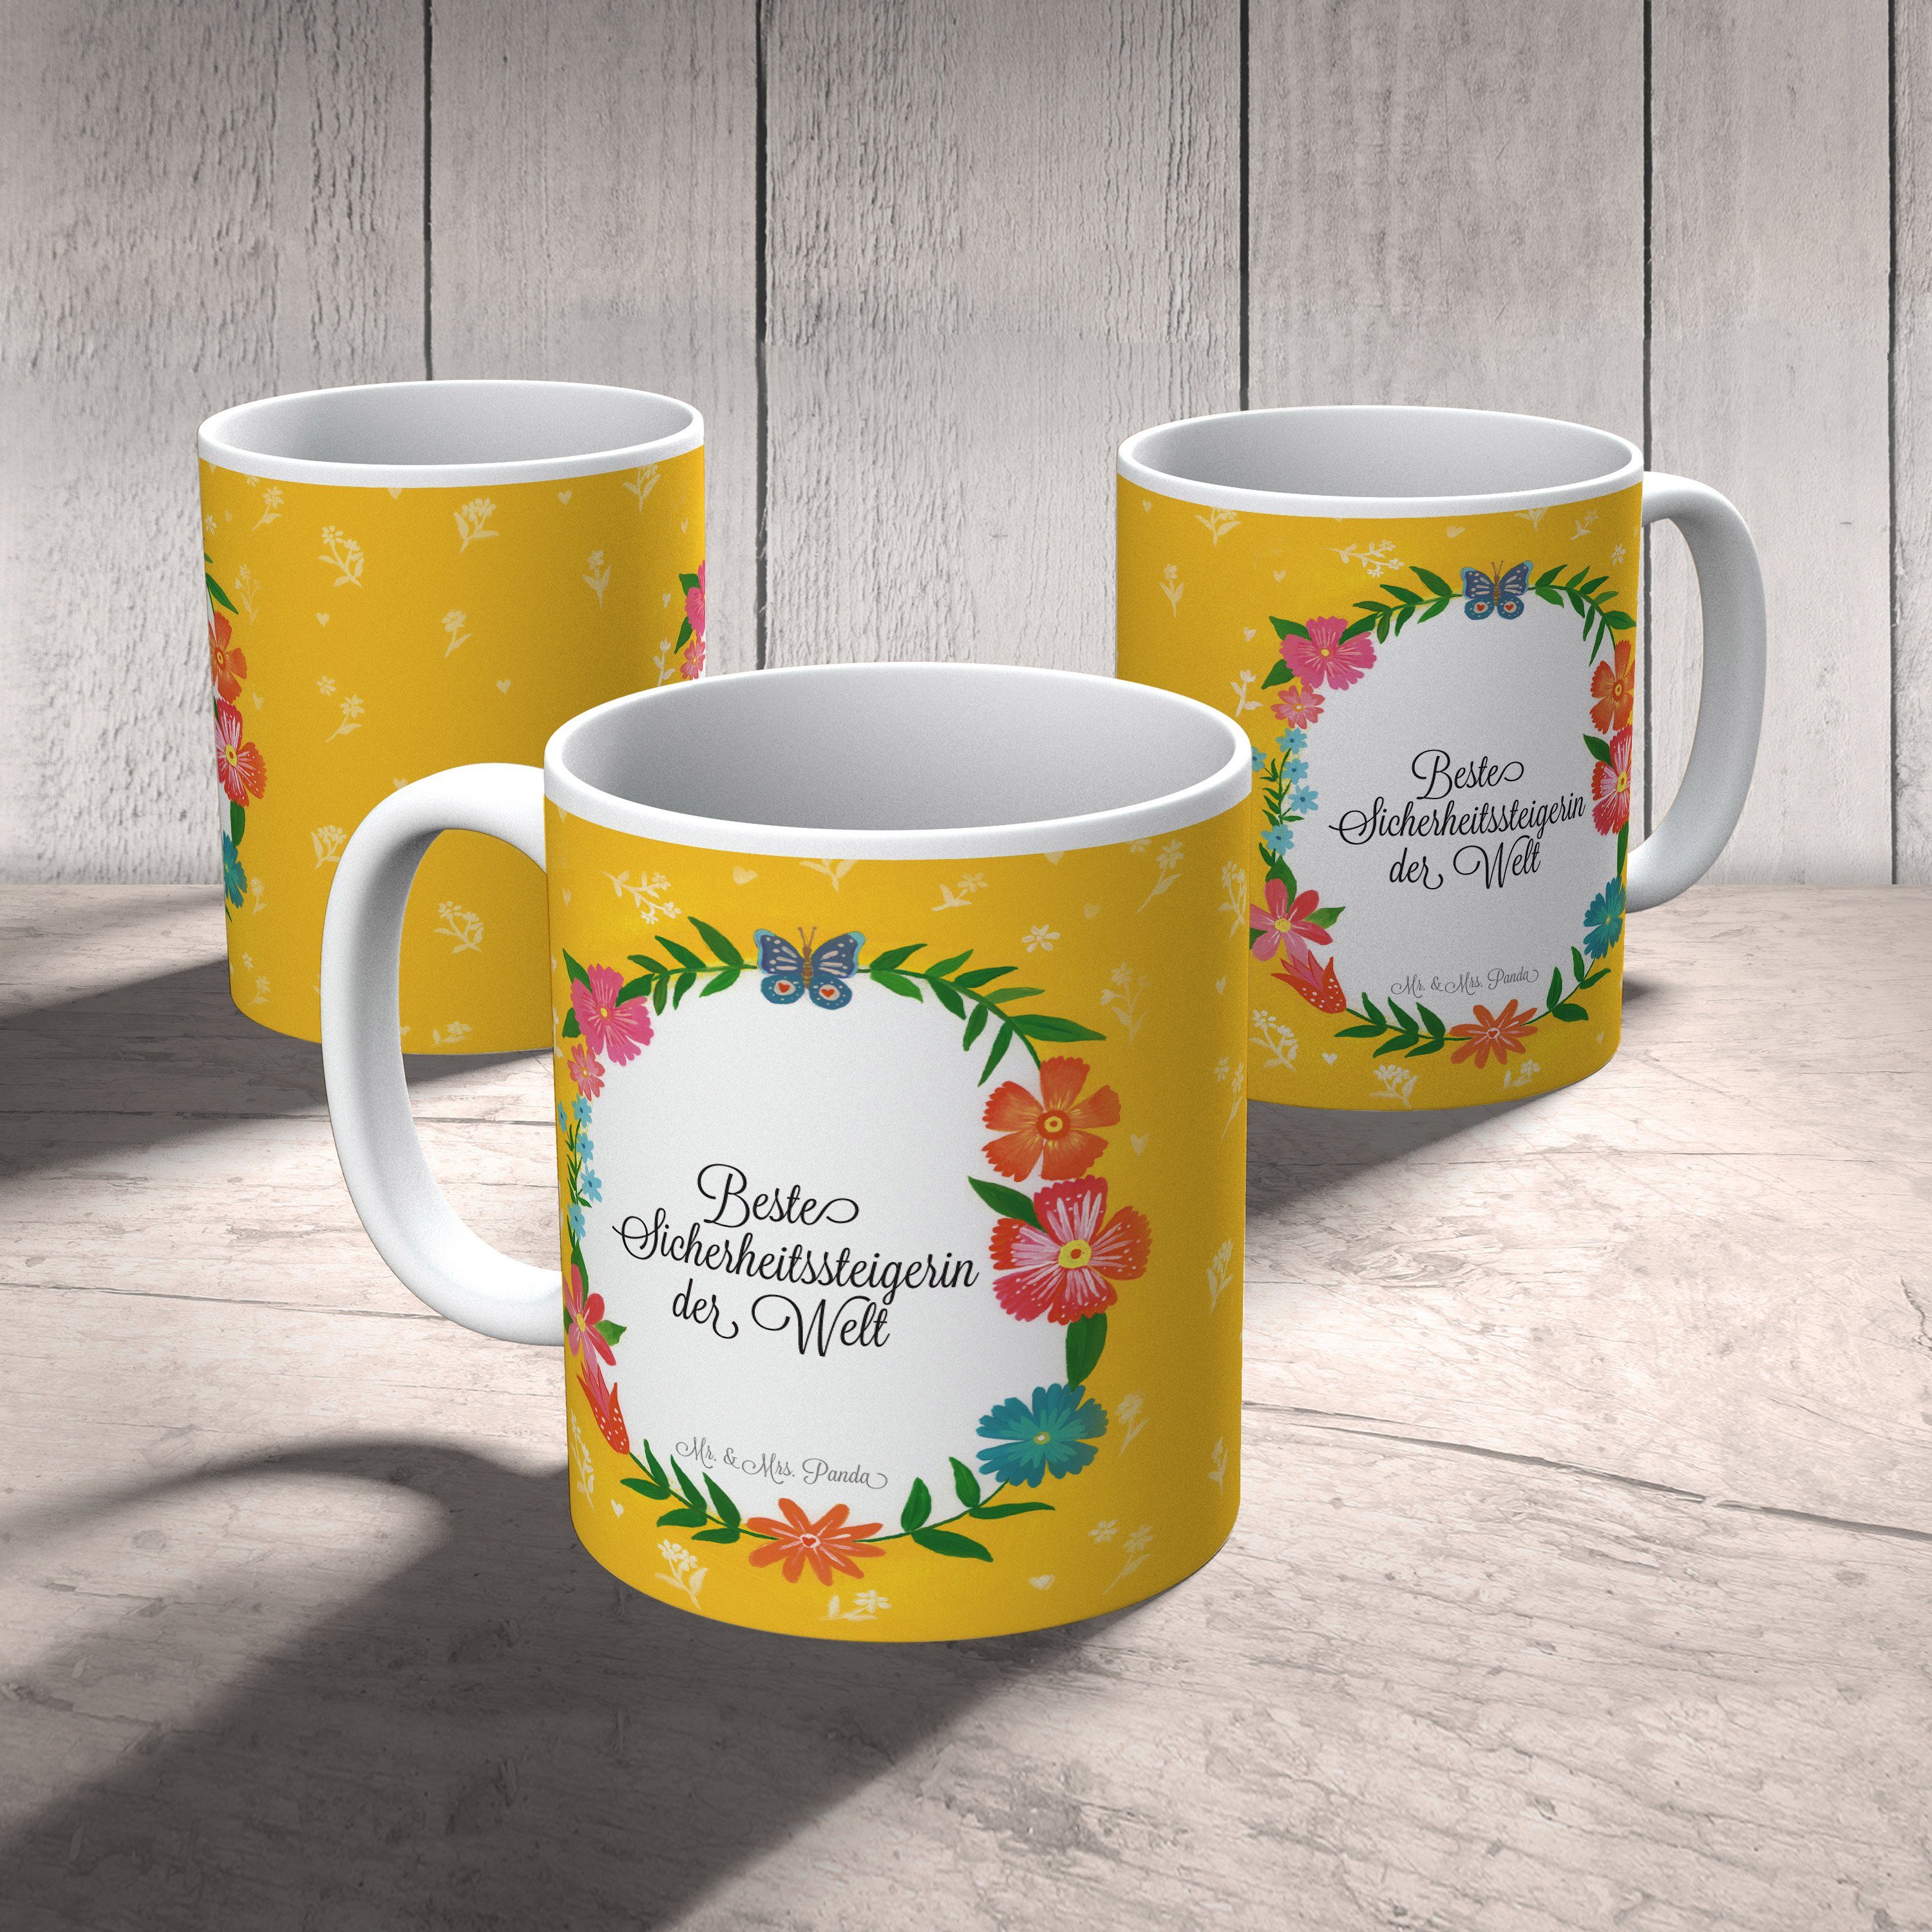 Geschenk & Panda Mrs. - Geschenk, Schenken, Mr. Keramik Tasse Tass, Sicherheitssteigerin Kaffeetasse,